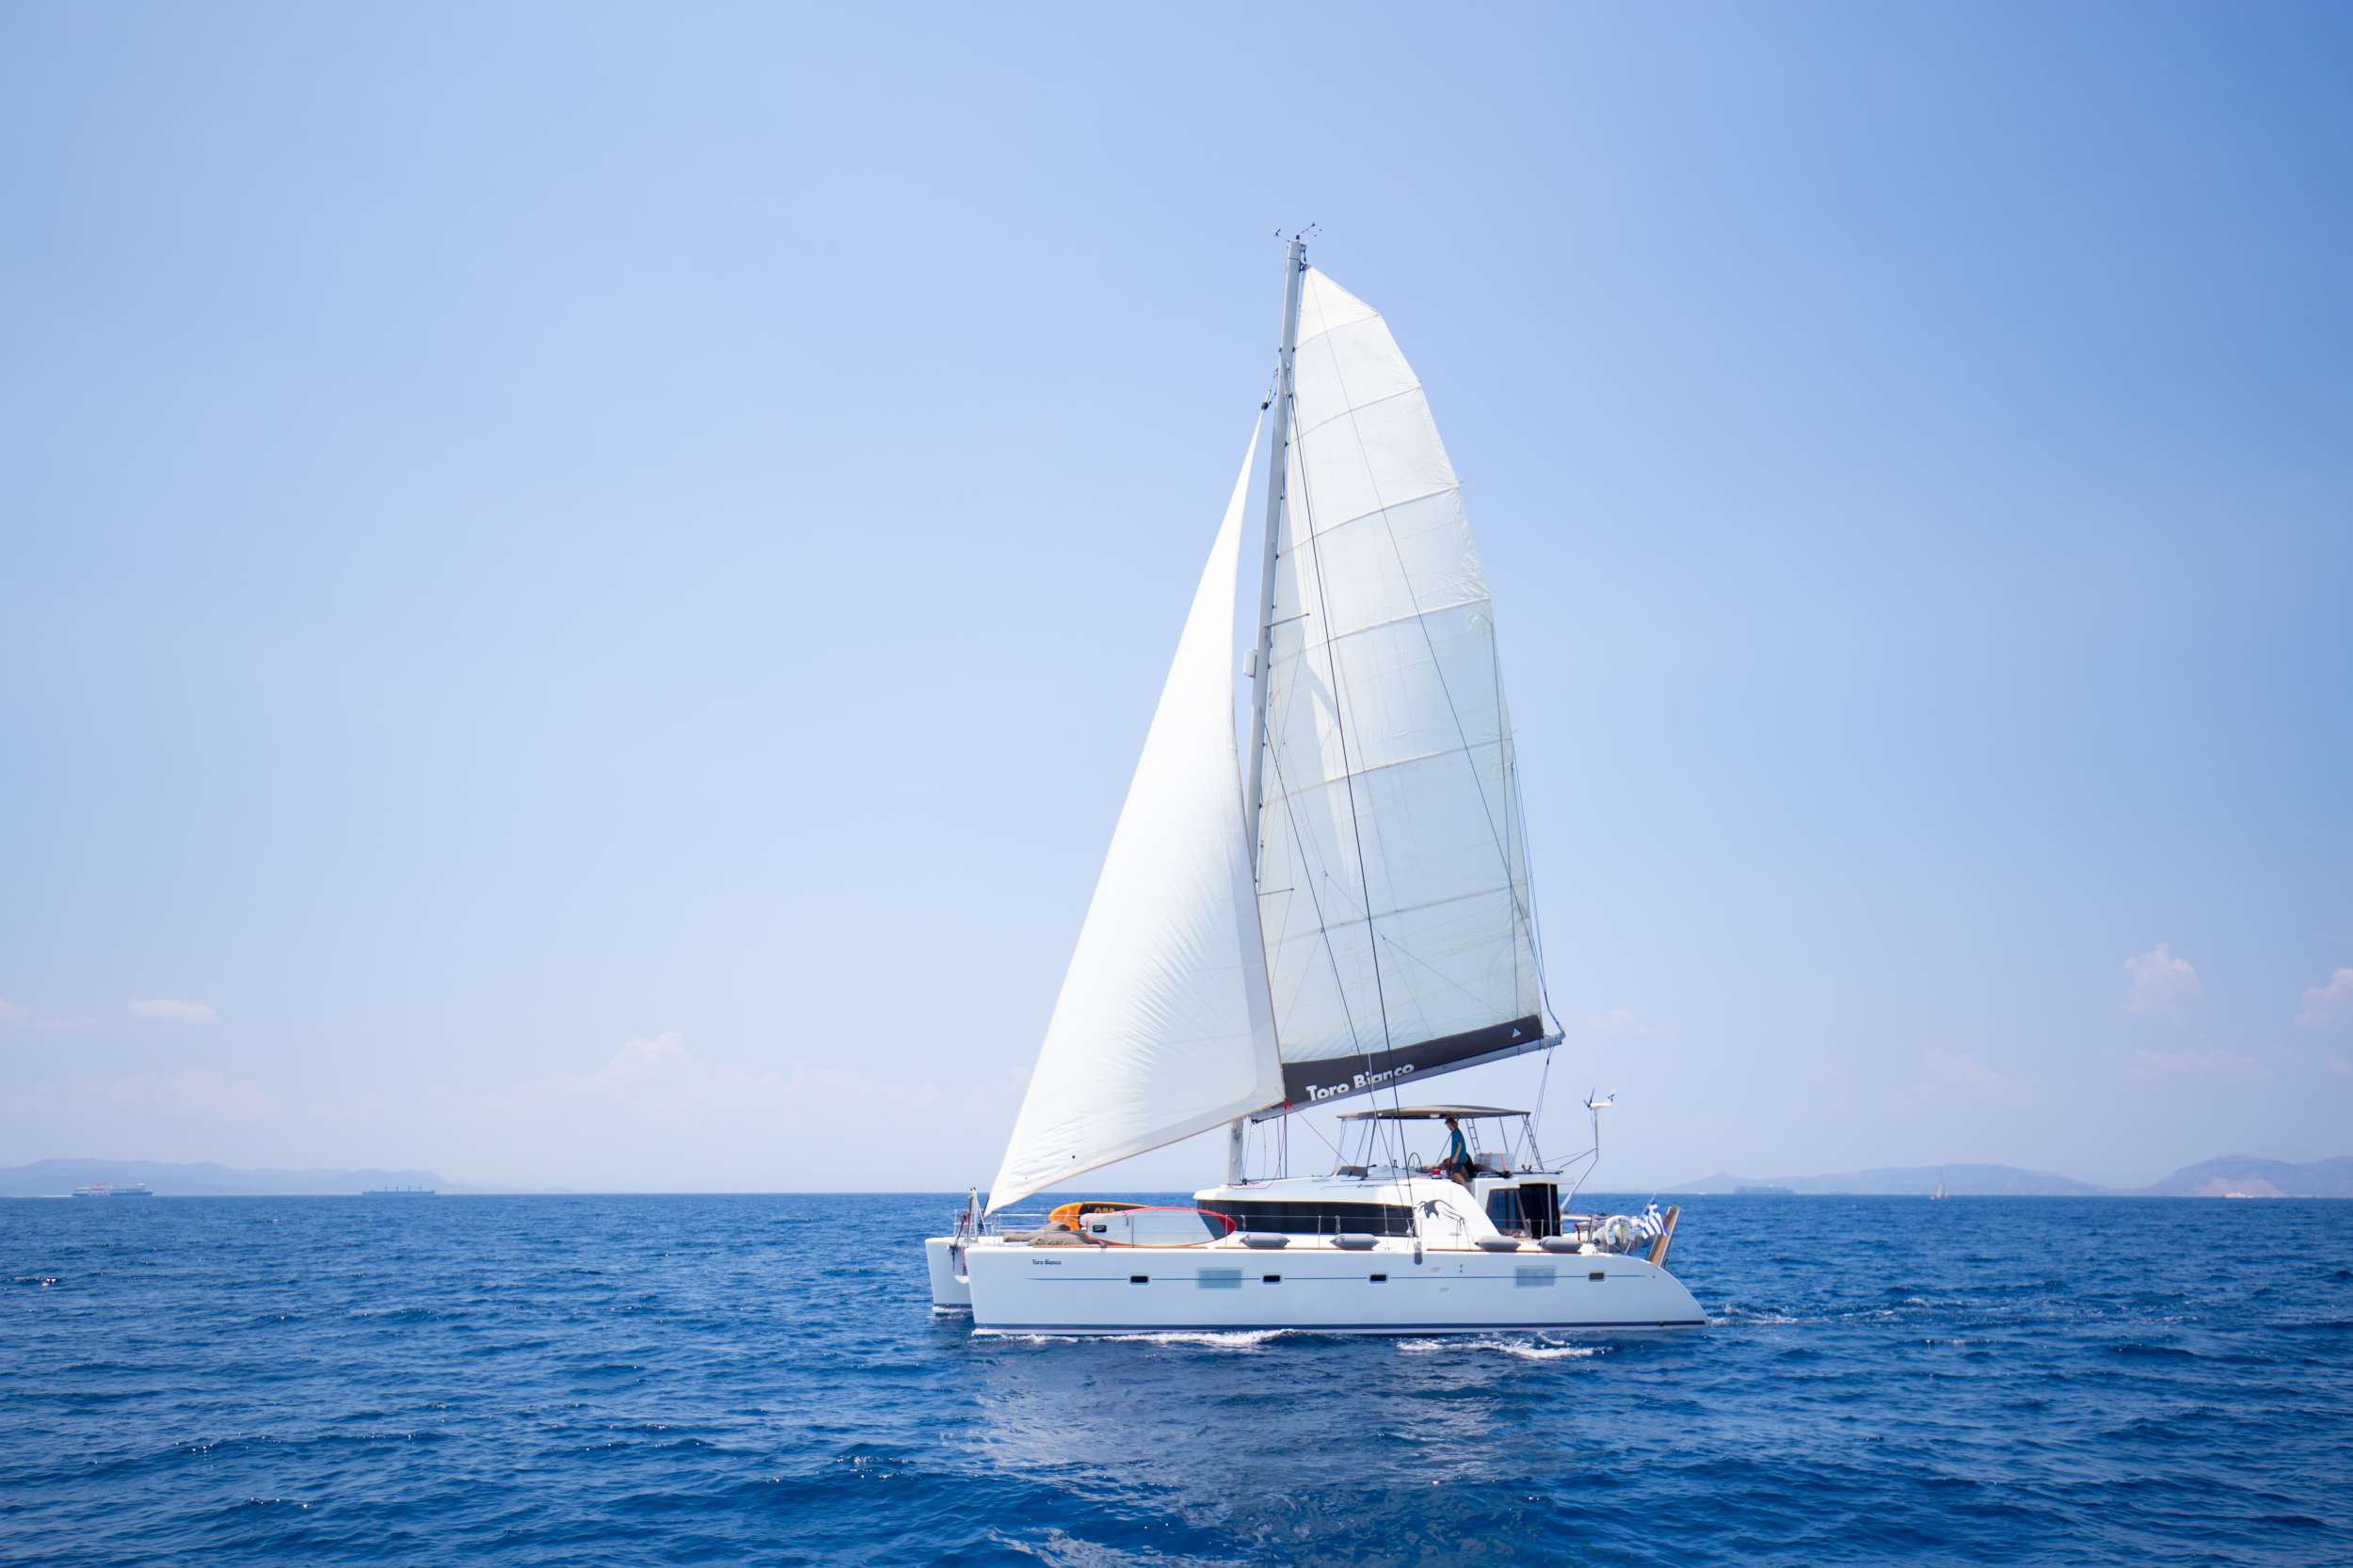 Sailing yacht TORO BIANCO